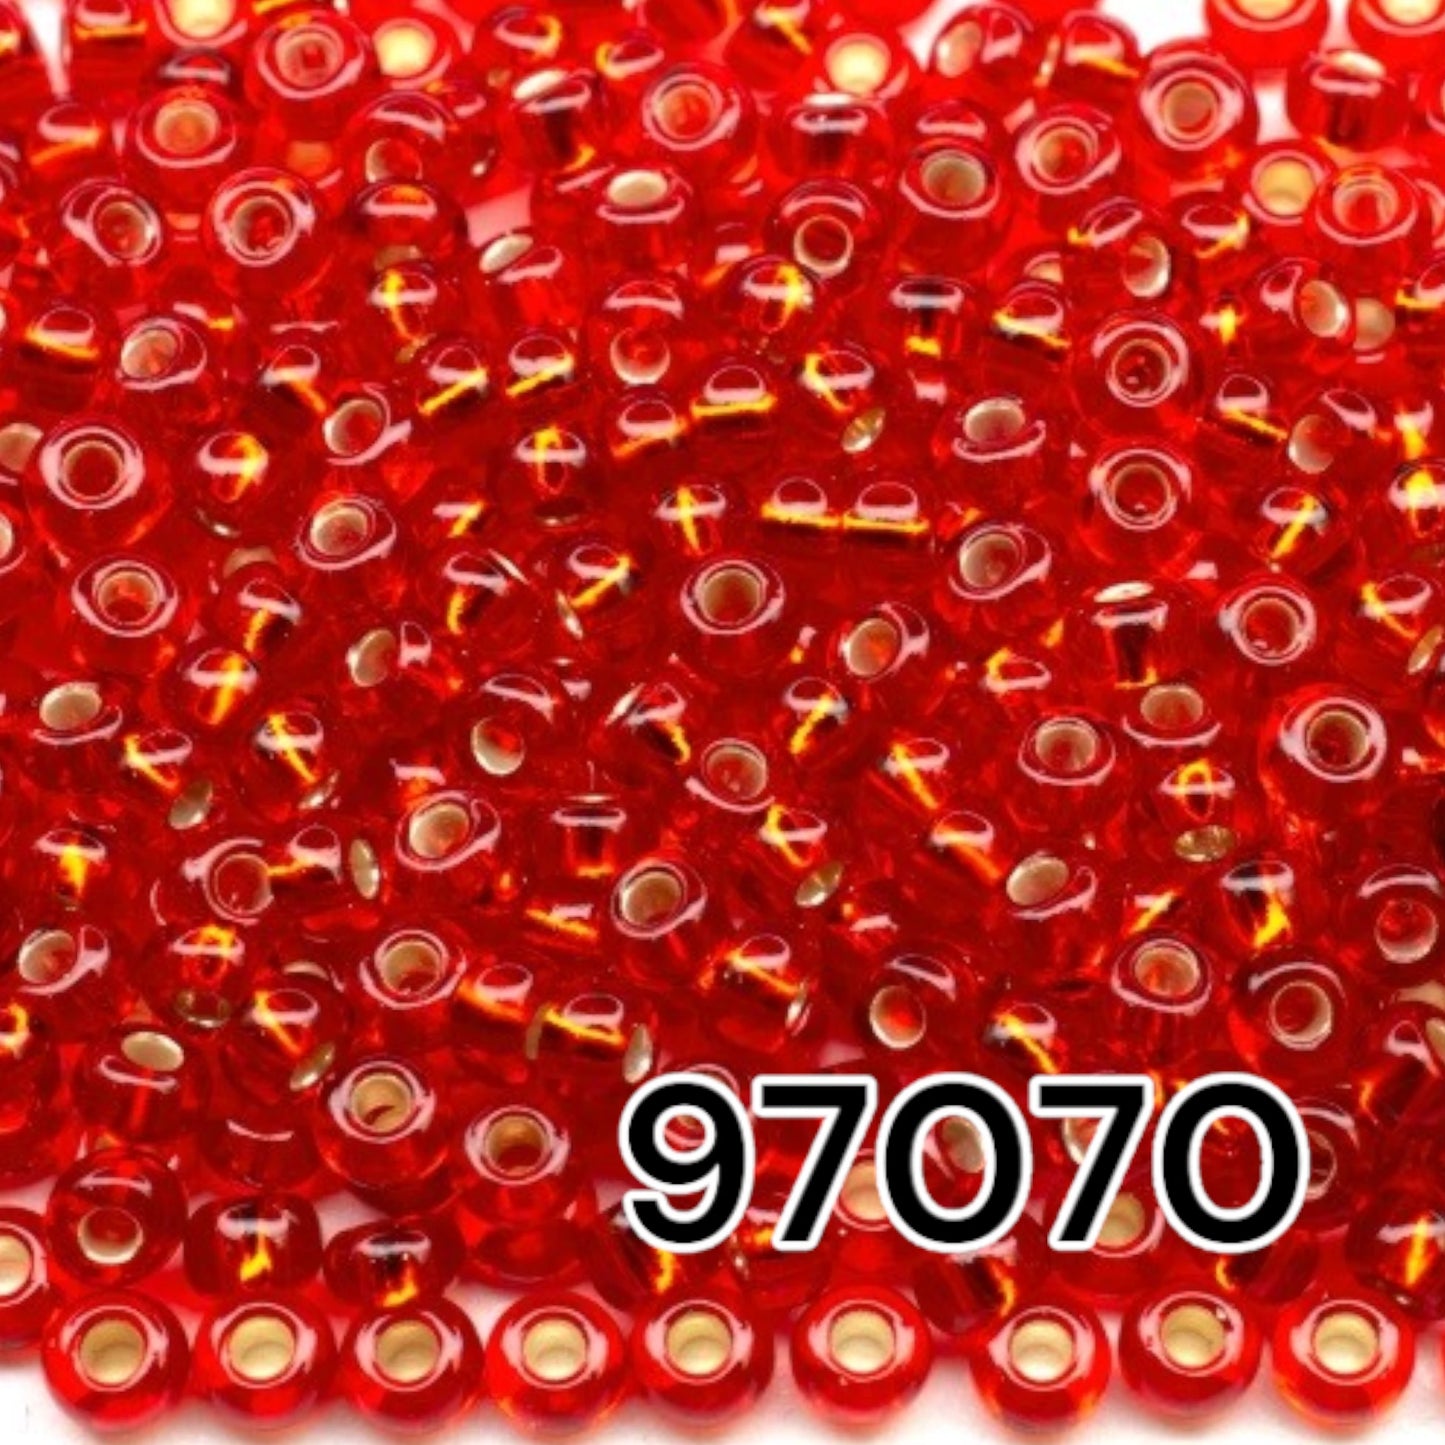 10/0 97070 Perles de graines Preciosa. Rouge transparent doublé argent.